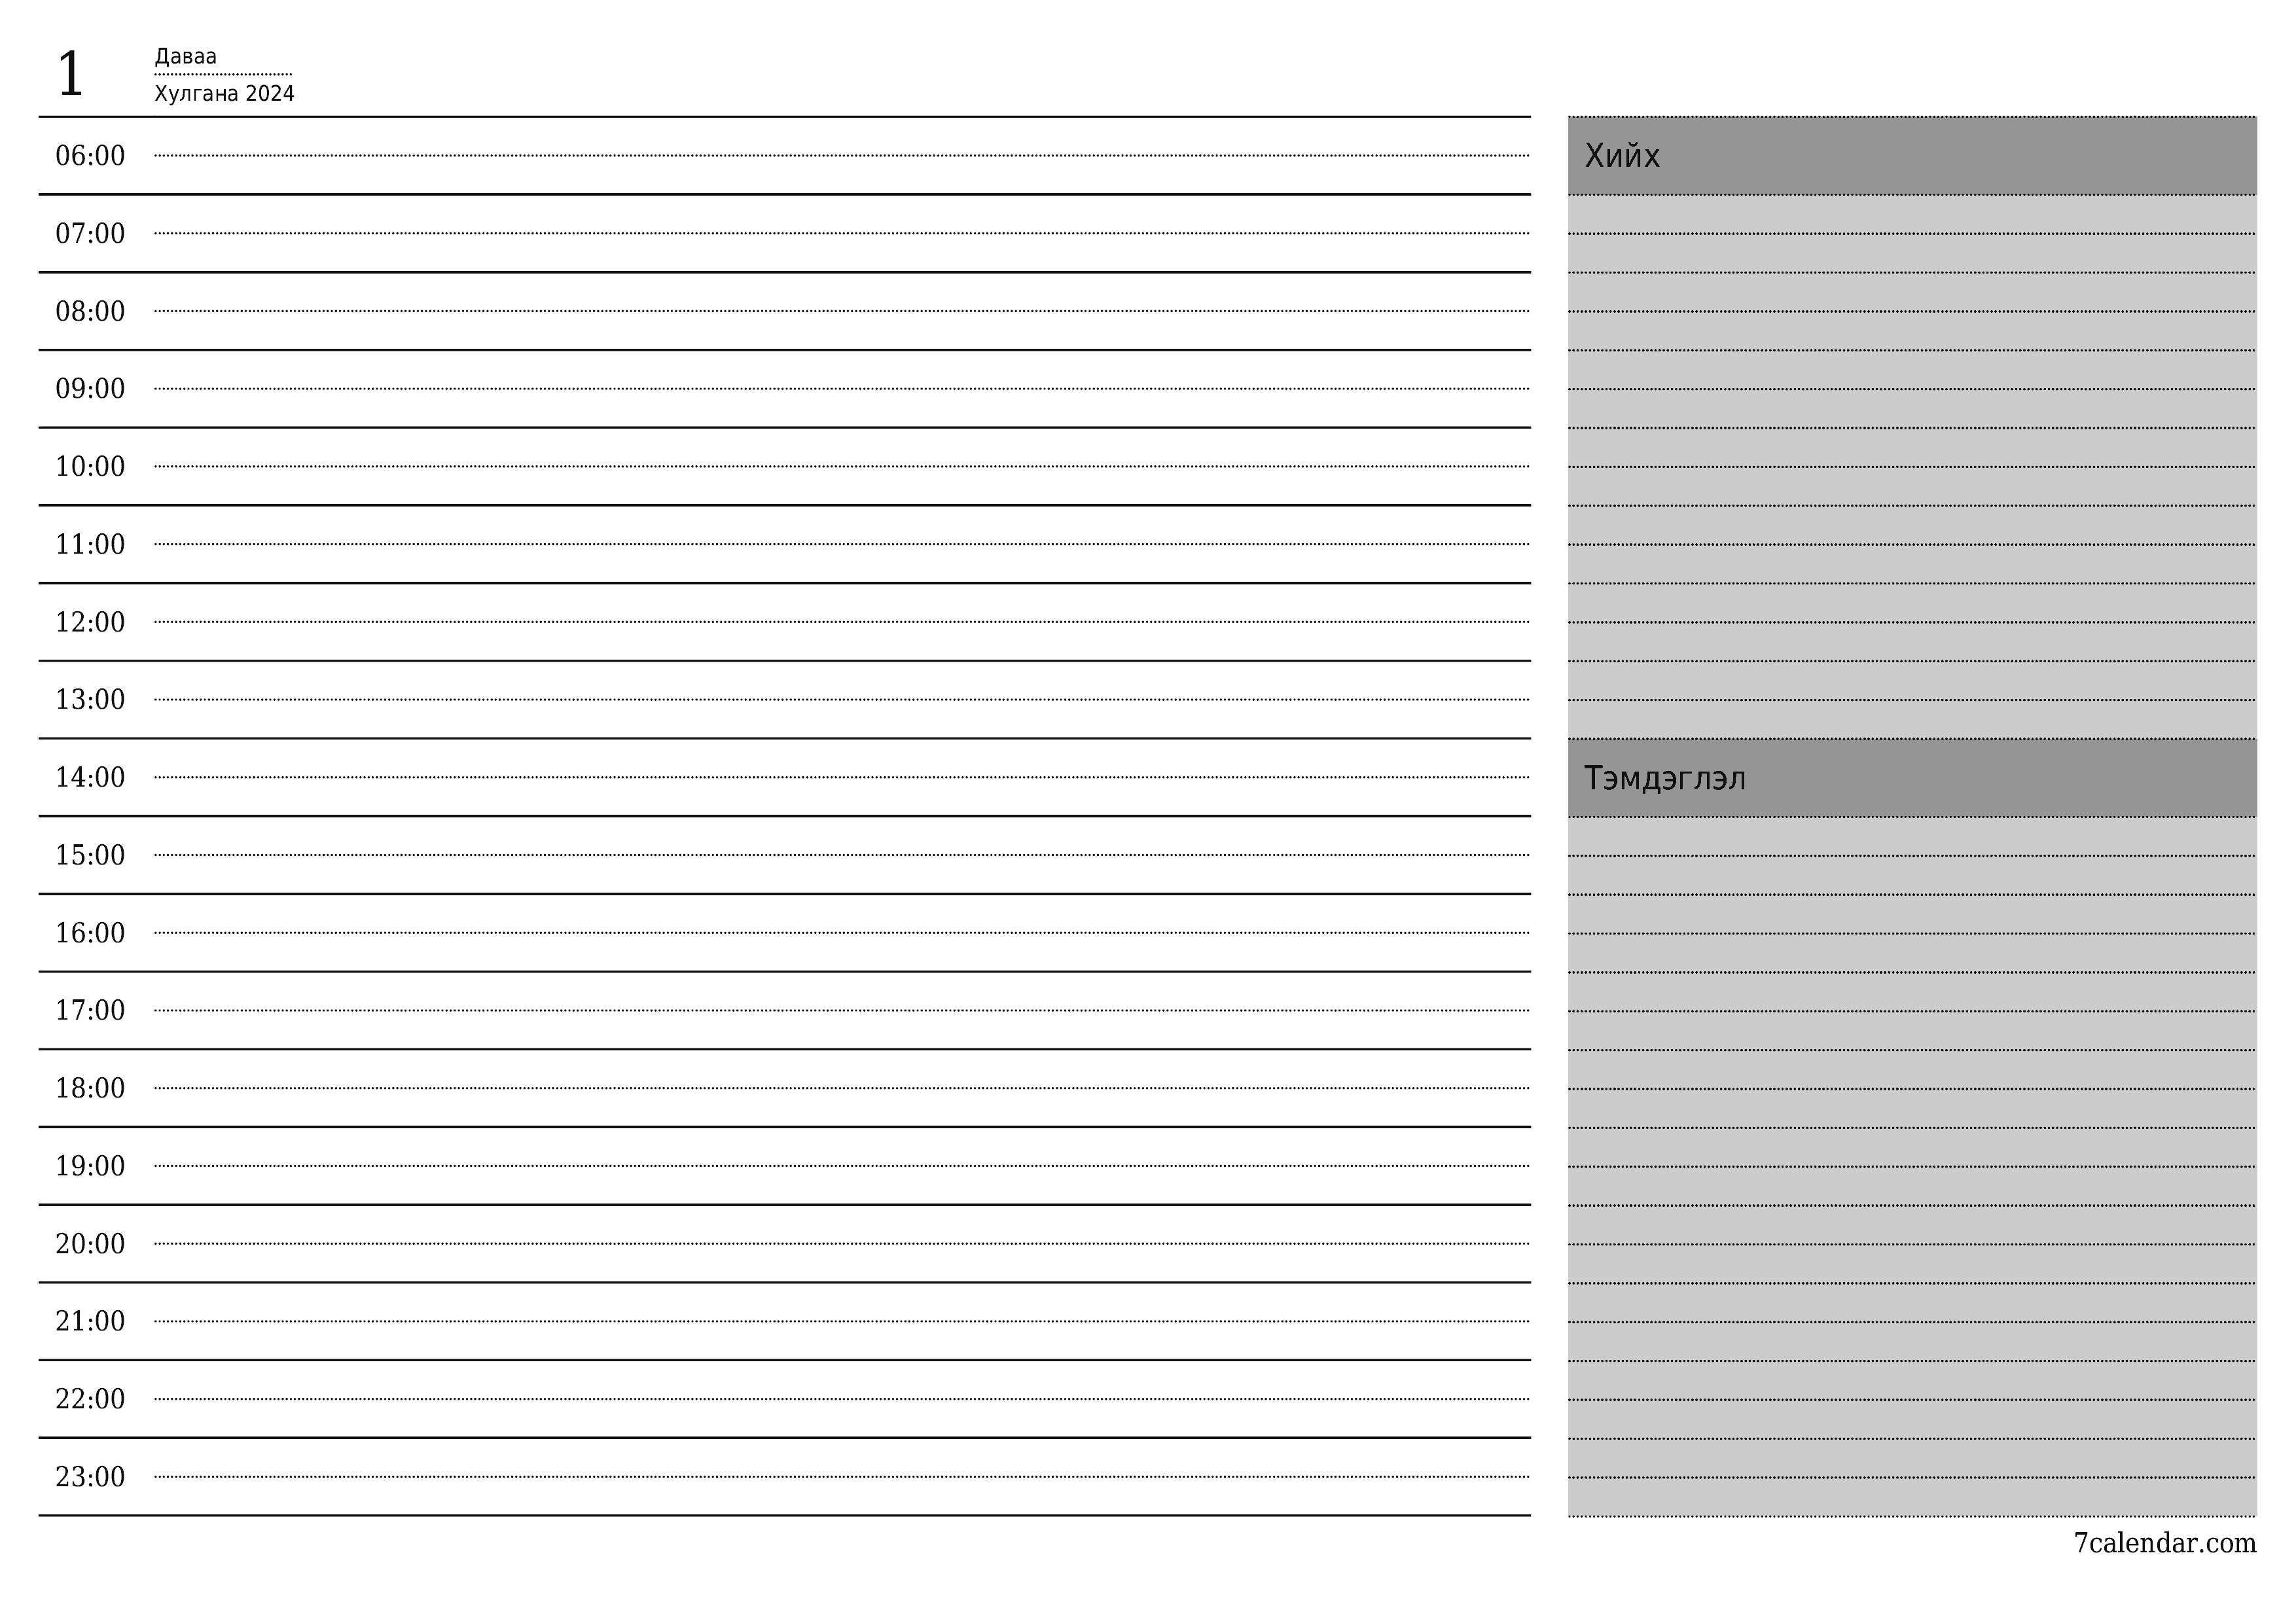 Өдөр тутмын төлөвлөгөөг Хулгана 2024 өдрийн тэмдэглэлтэй хамт хадгалж, PDF хэлбэрээр хадгалж, хэвлэ PNG Mongolian